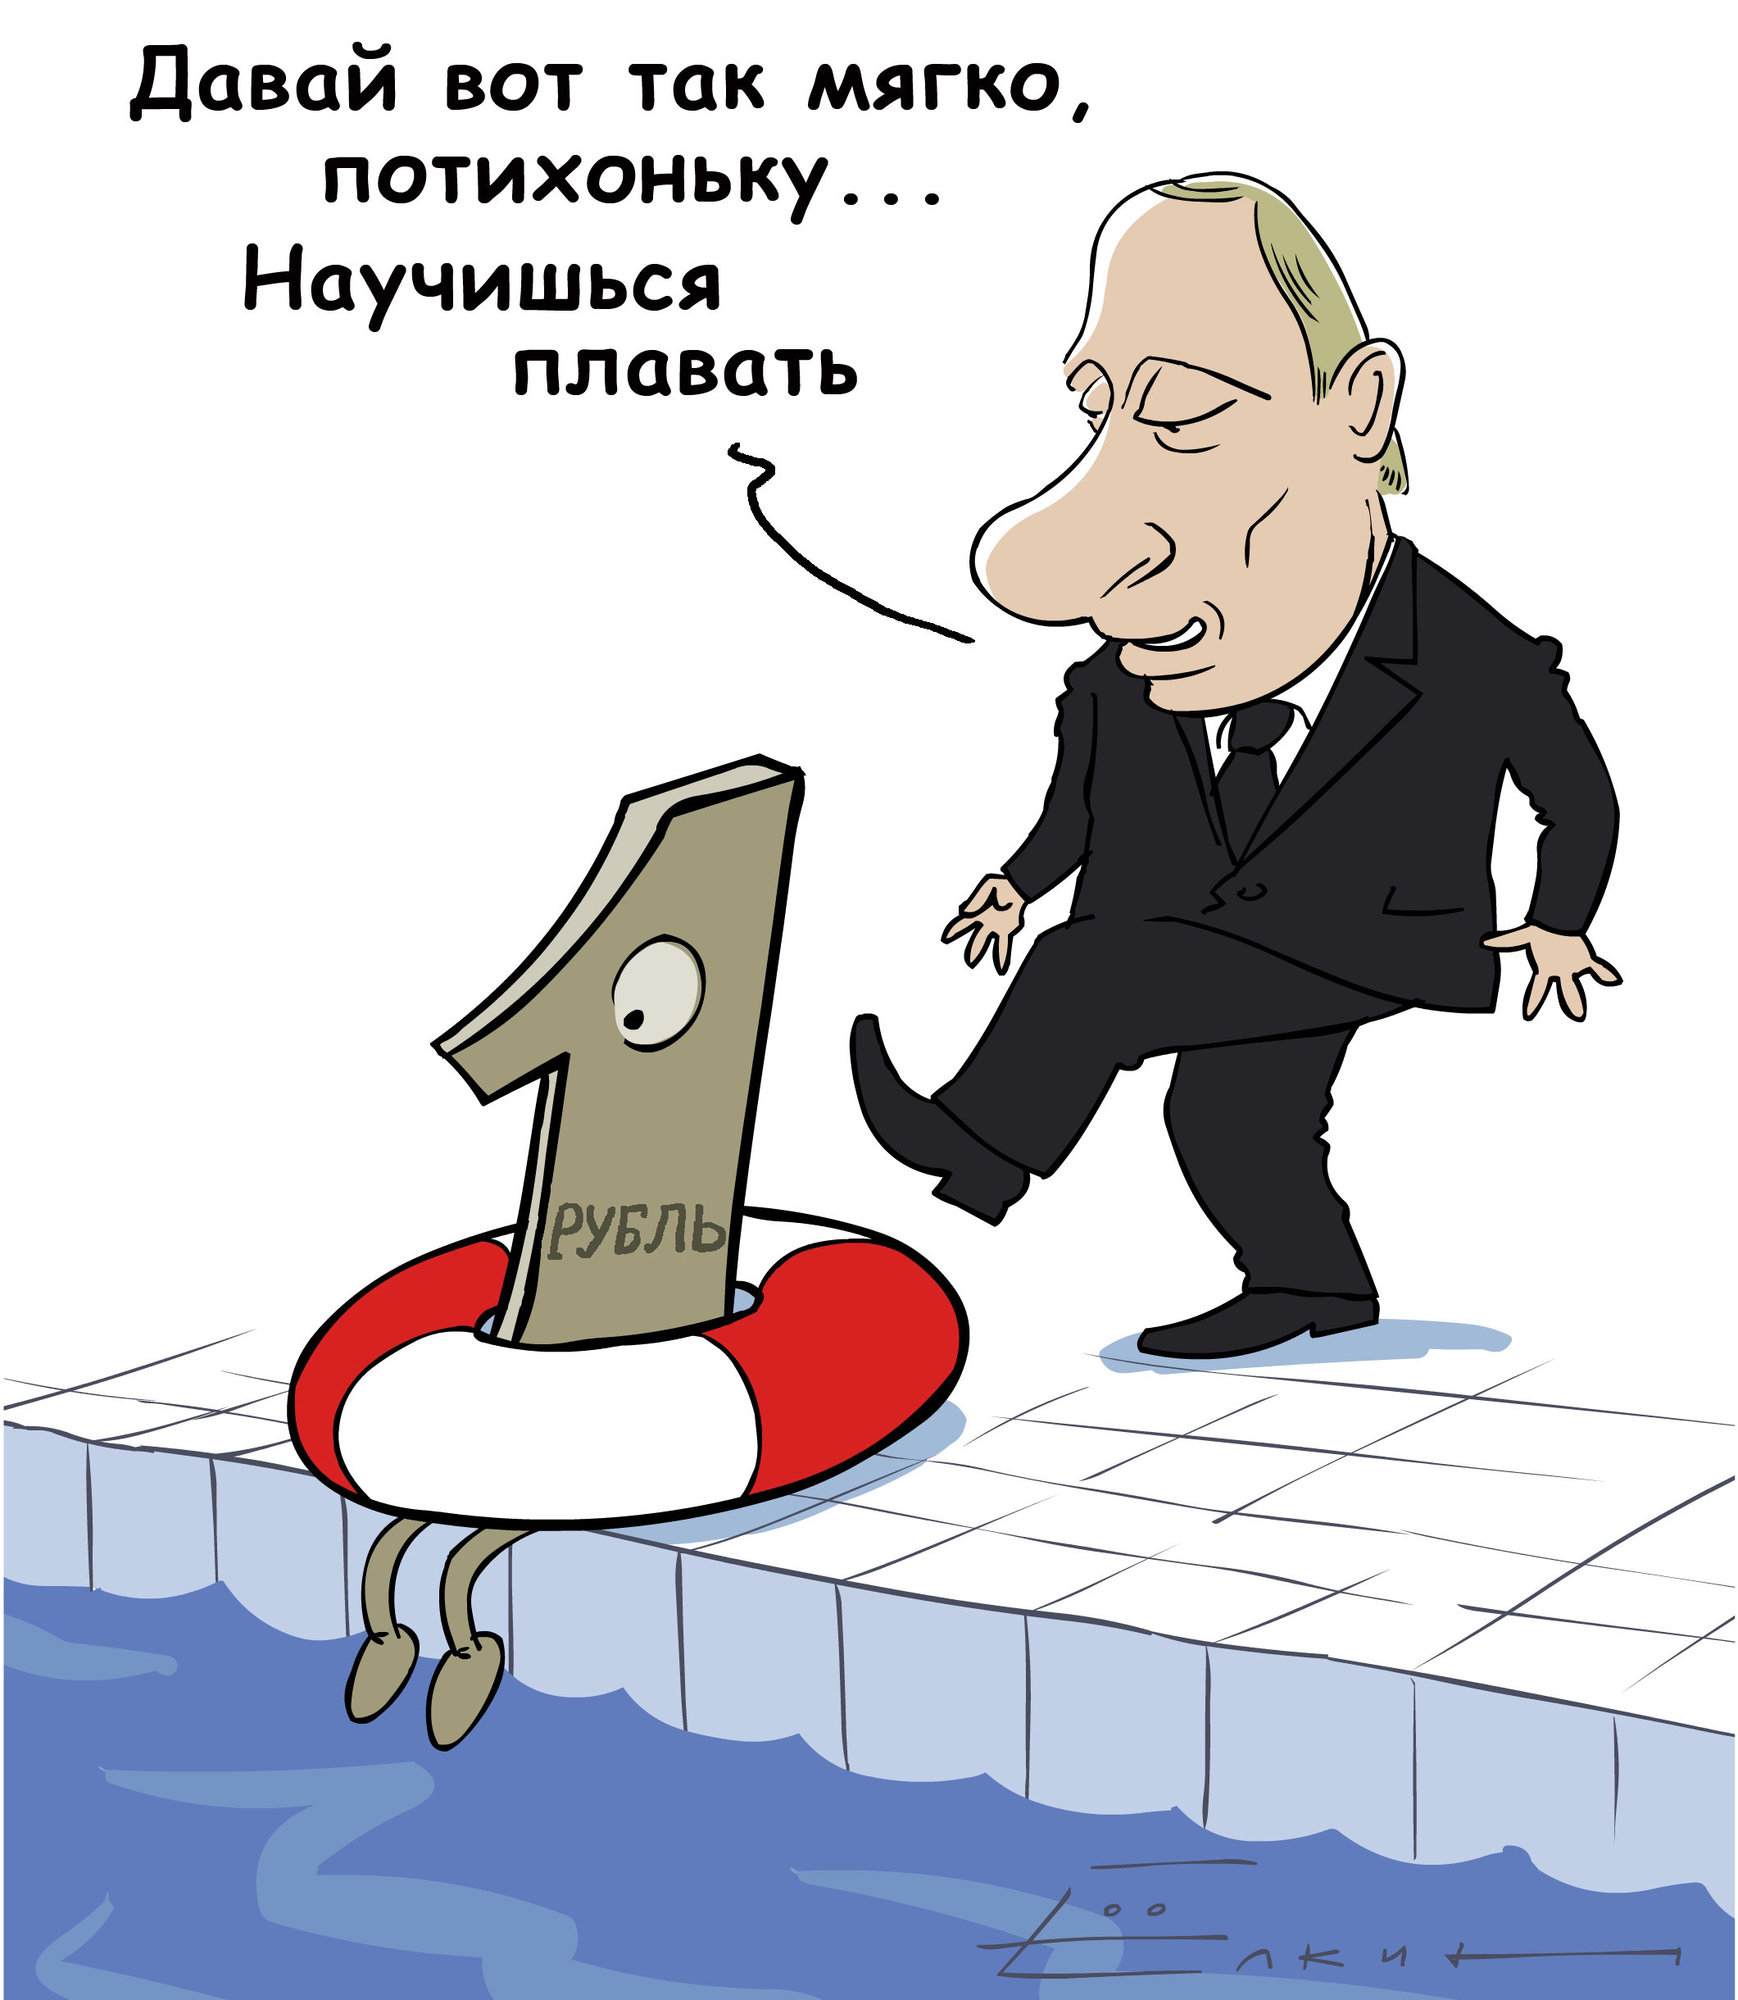 Даешь за доллар рубль. Рубль карикатура. Рубль падает карикатура. Экономика карикатура. Падение рубля карикатура.